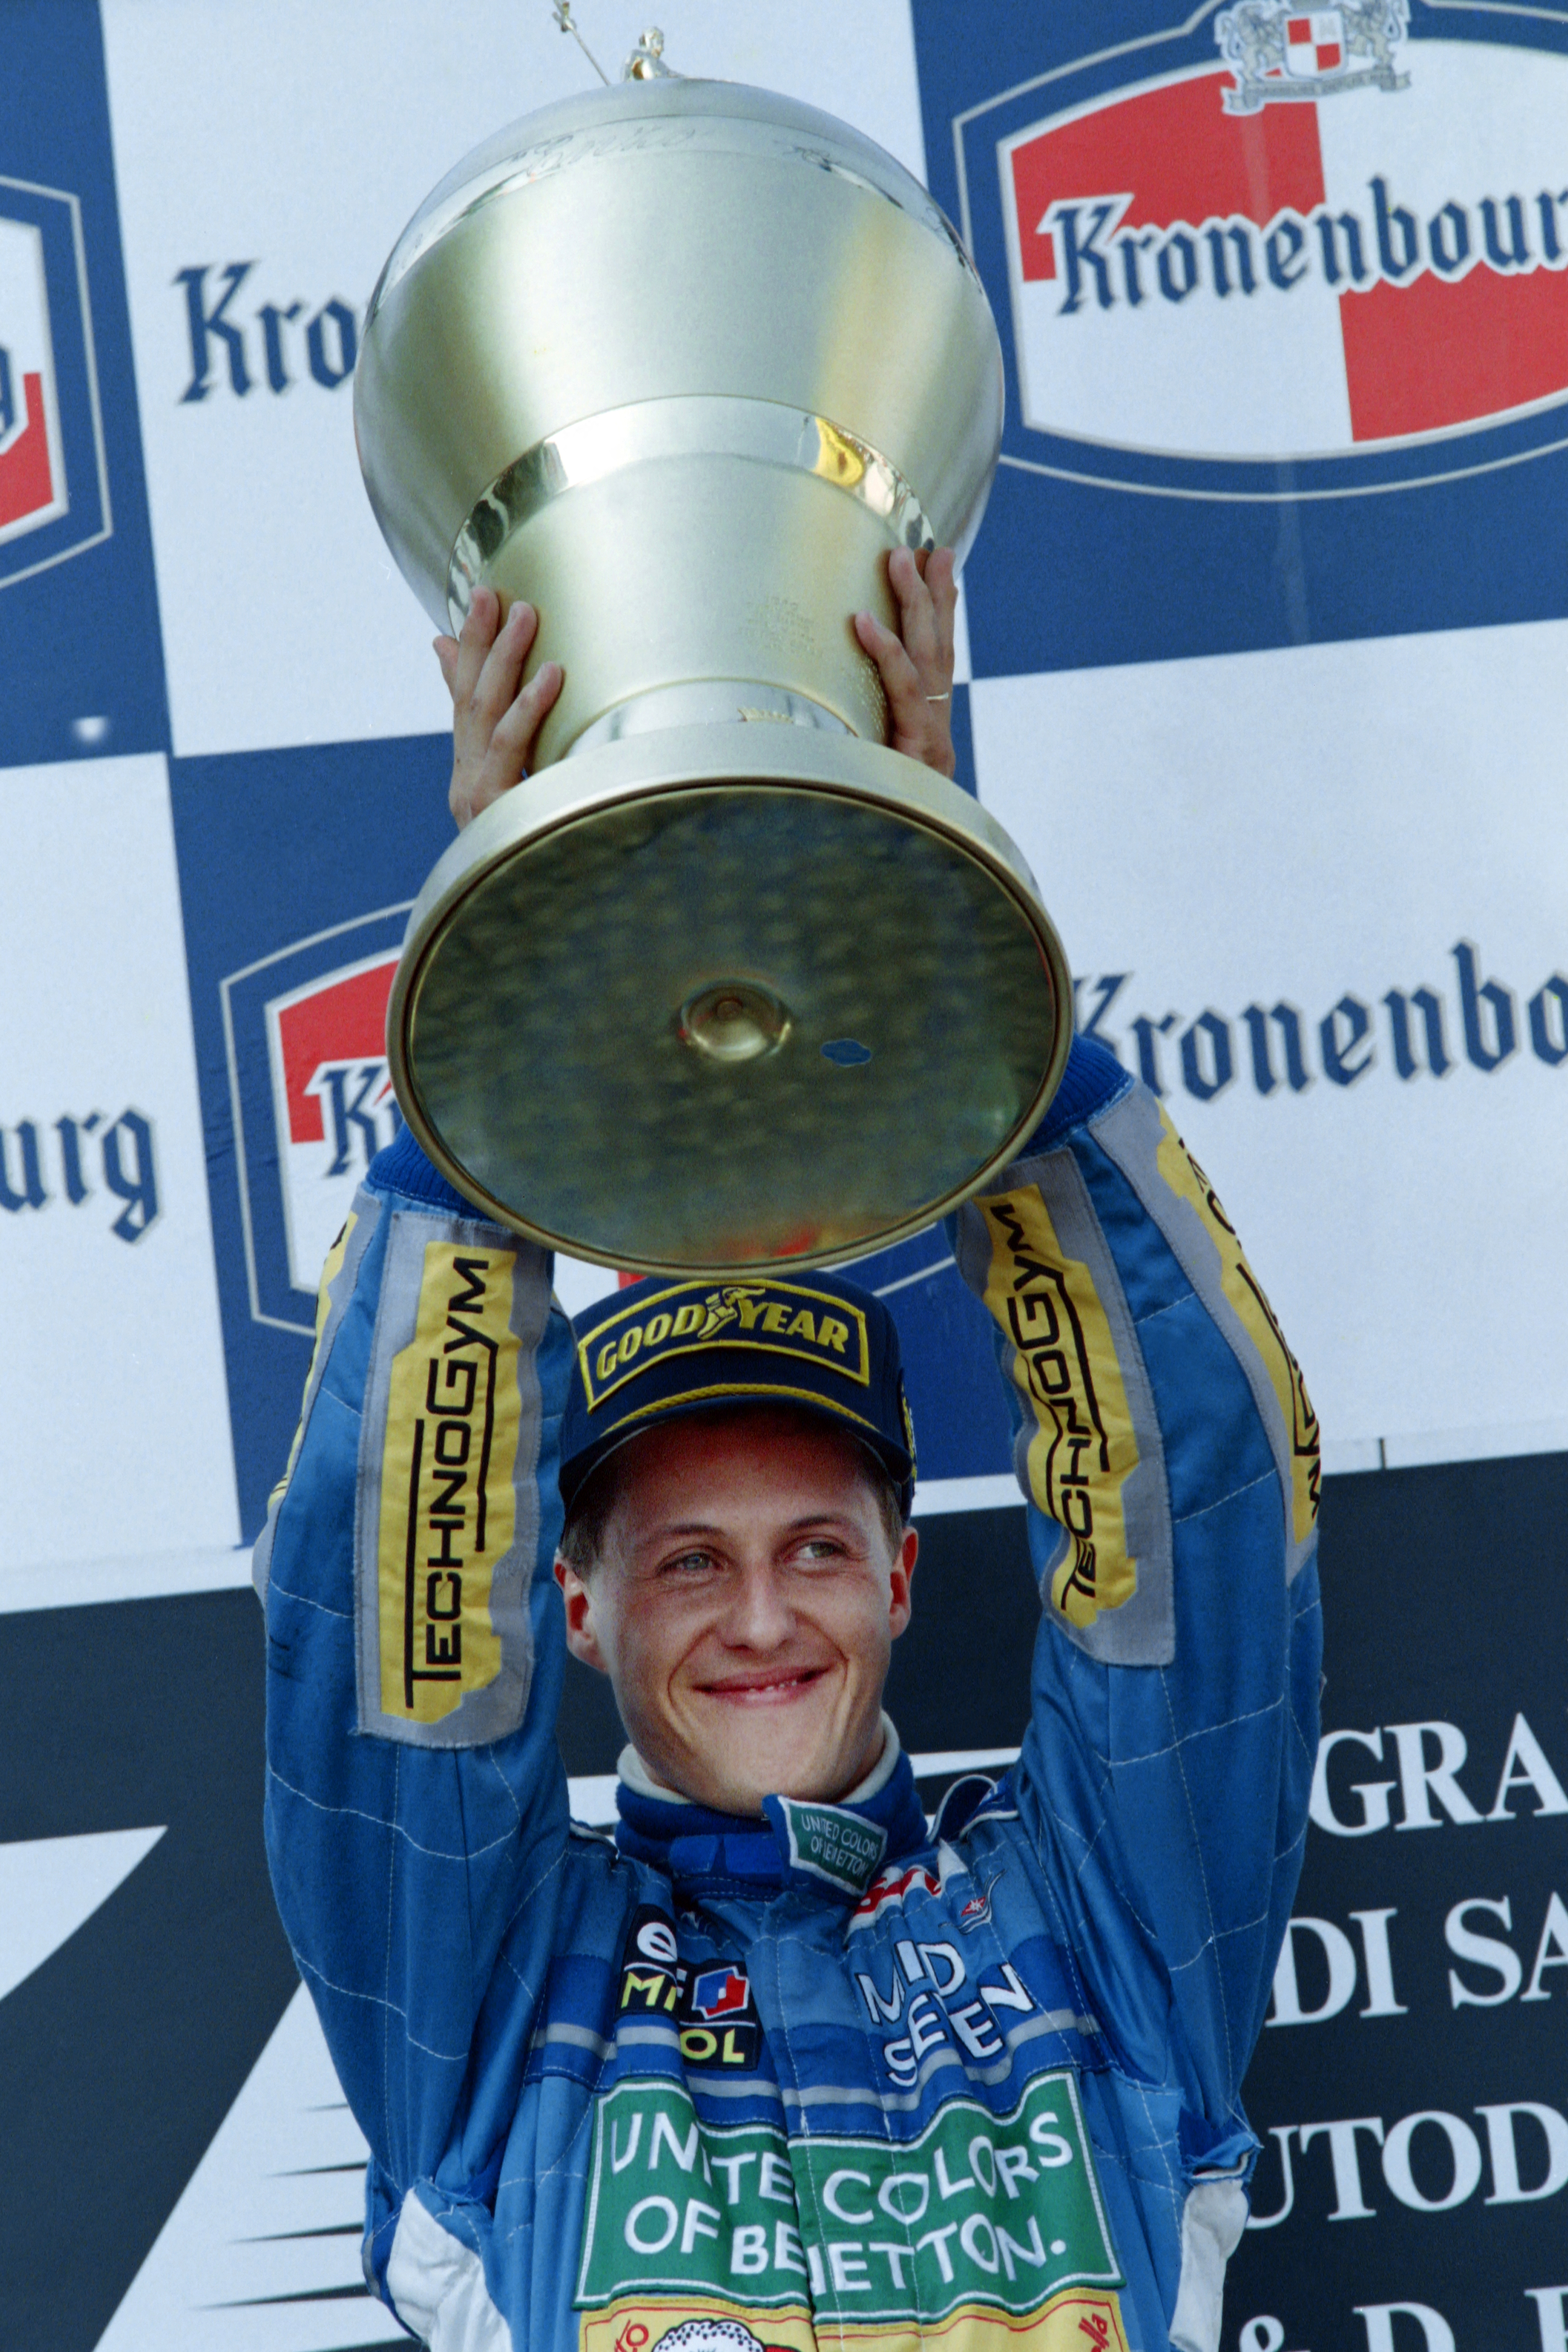 Schumacher gilt weithin als der beste Fahrer der Formel-1-Geschichte